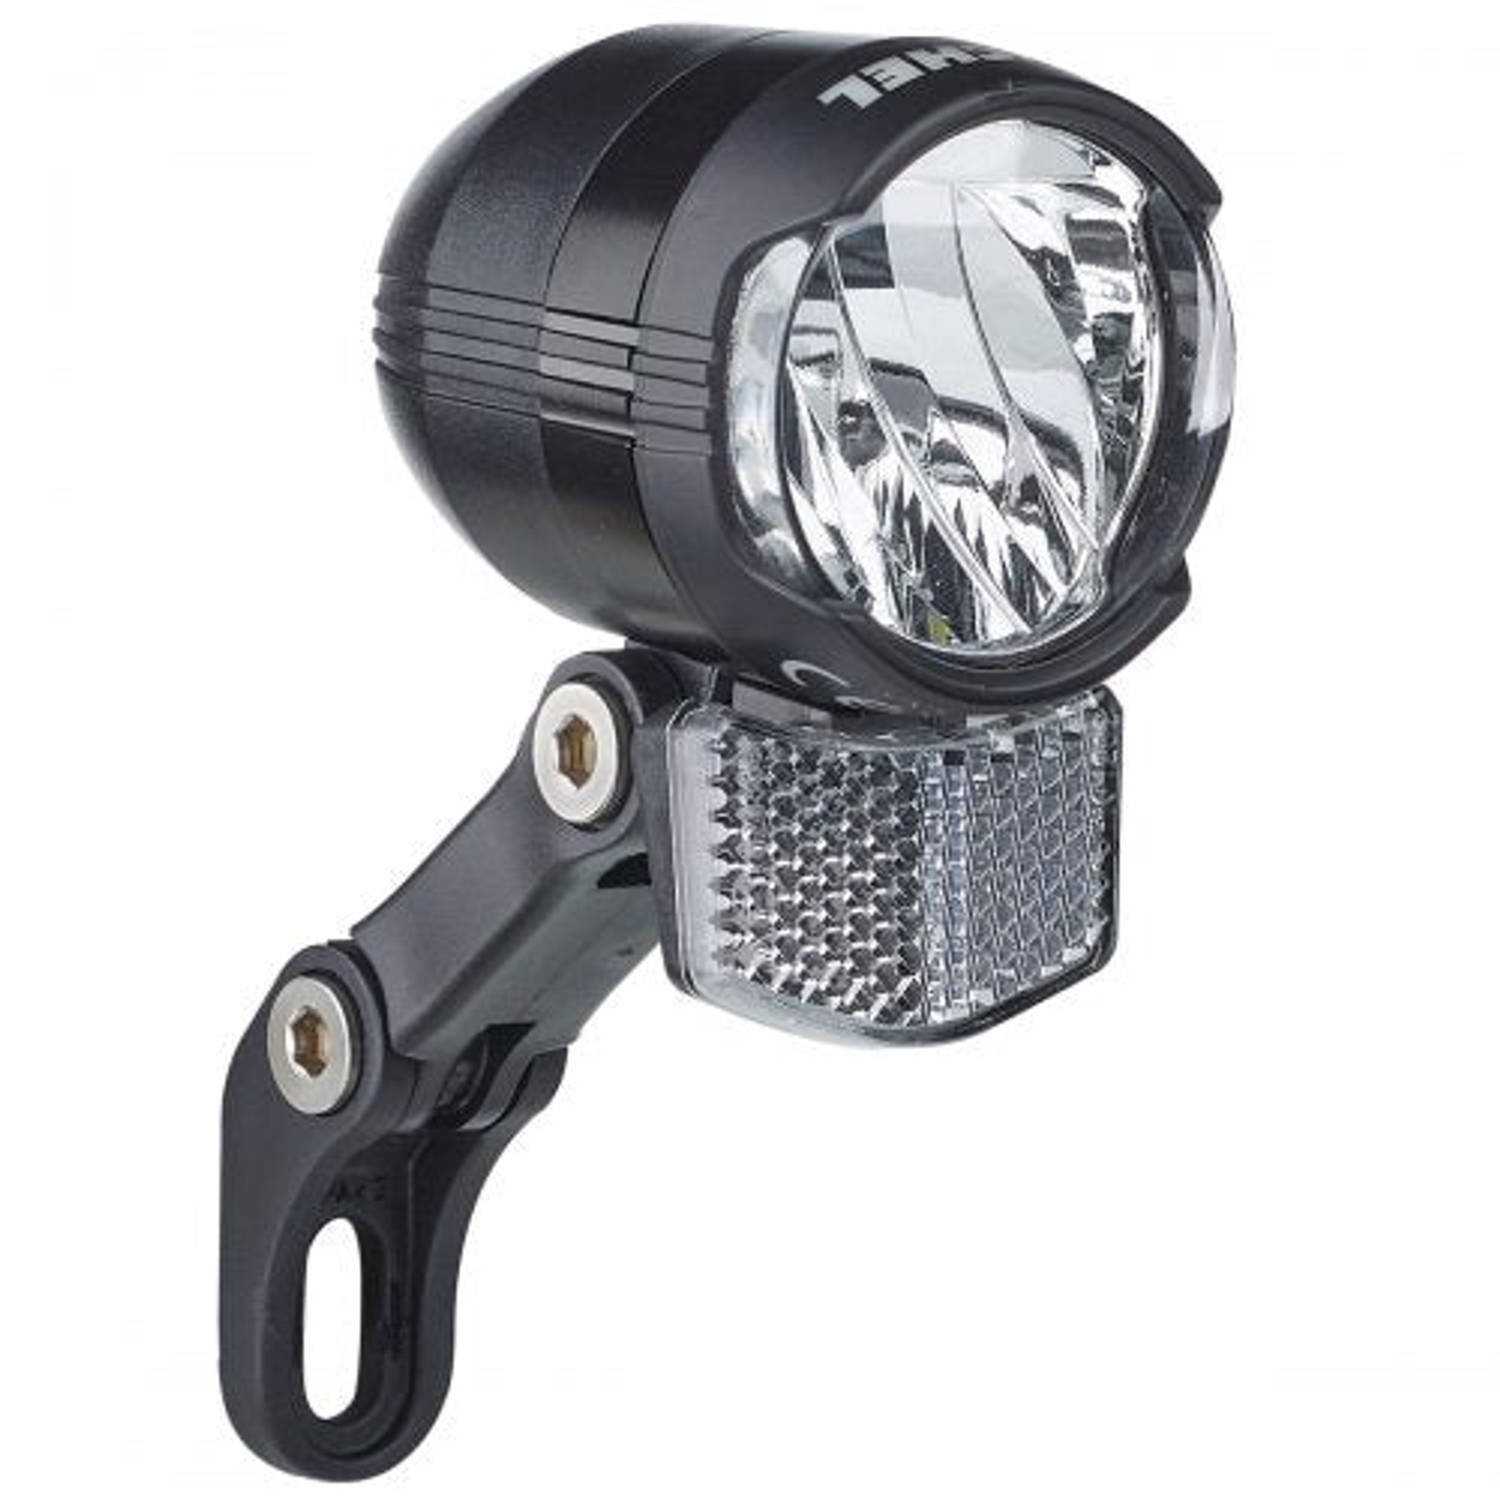 Büchel koplamp Shiny 80 aan-uit-auto functie led 80 lux zwart